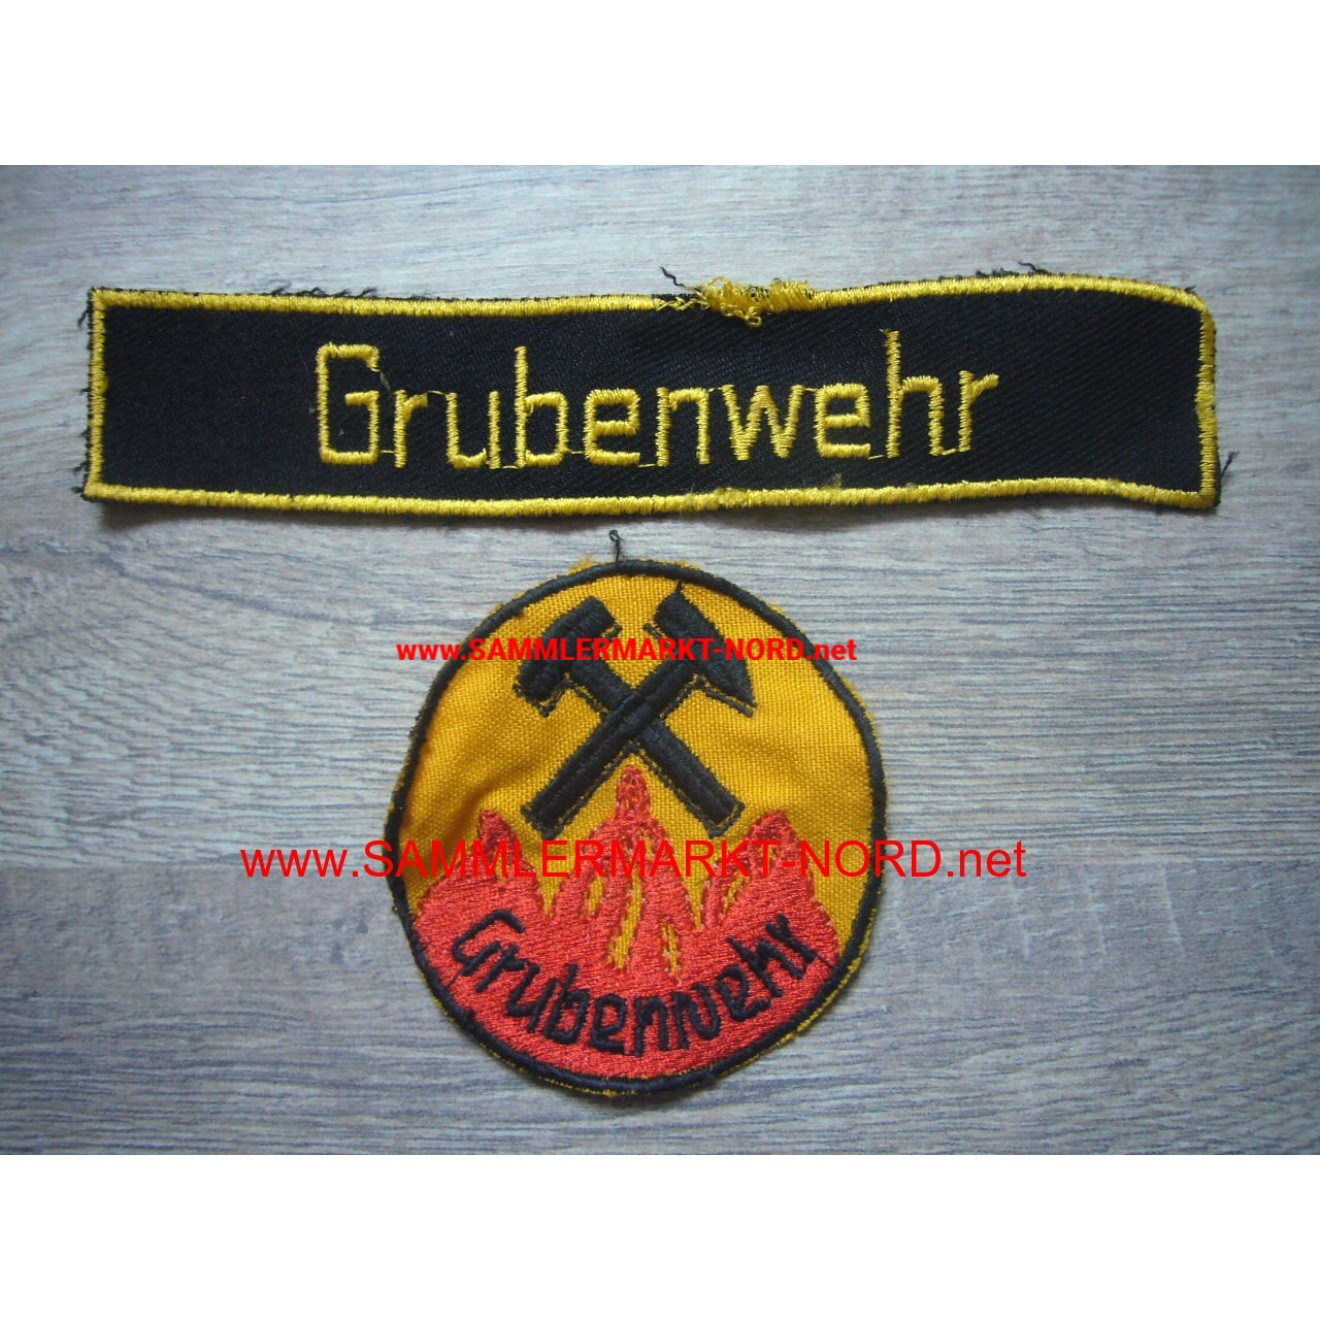 Grubenwehr (Bergbau) - Uniformabzeichen